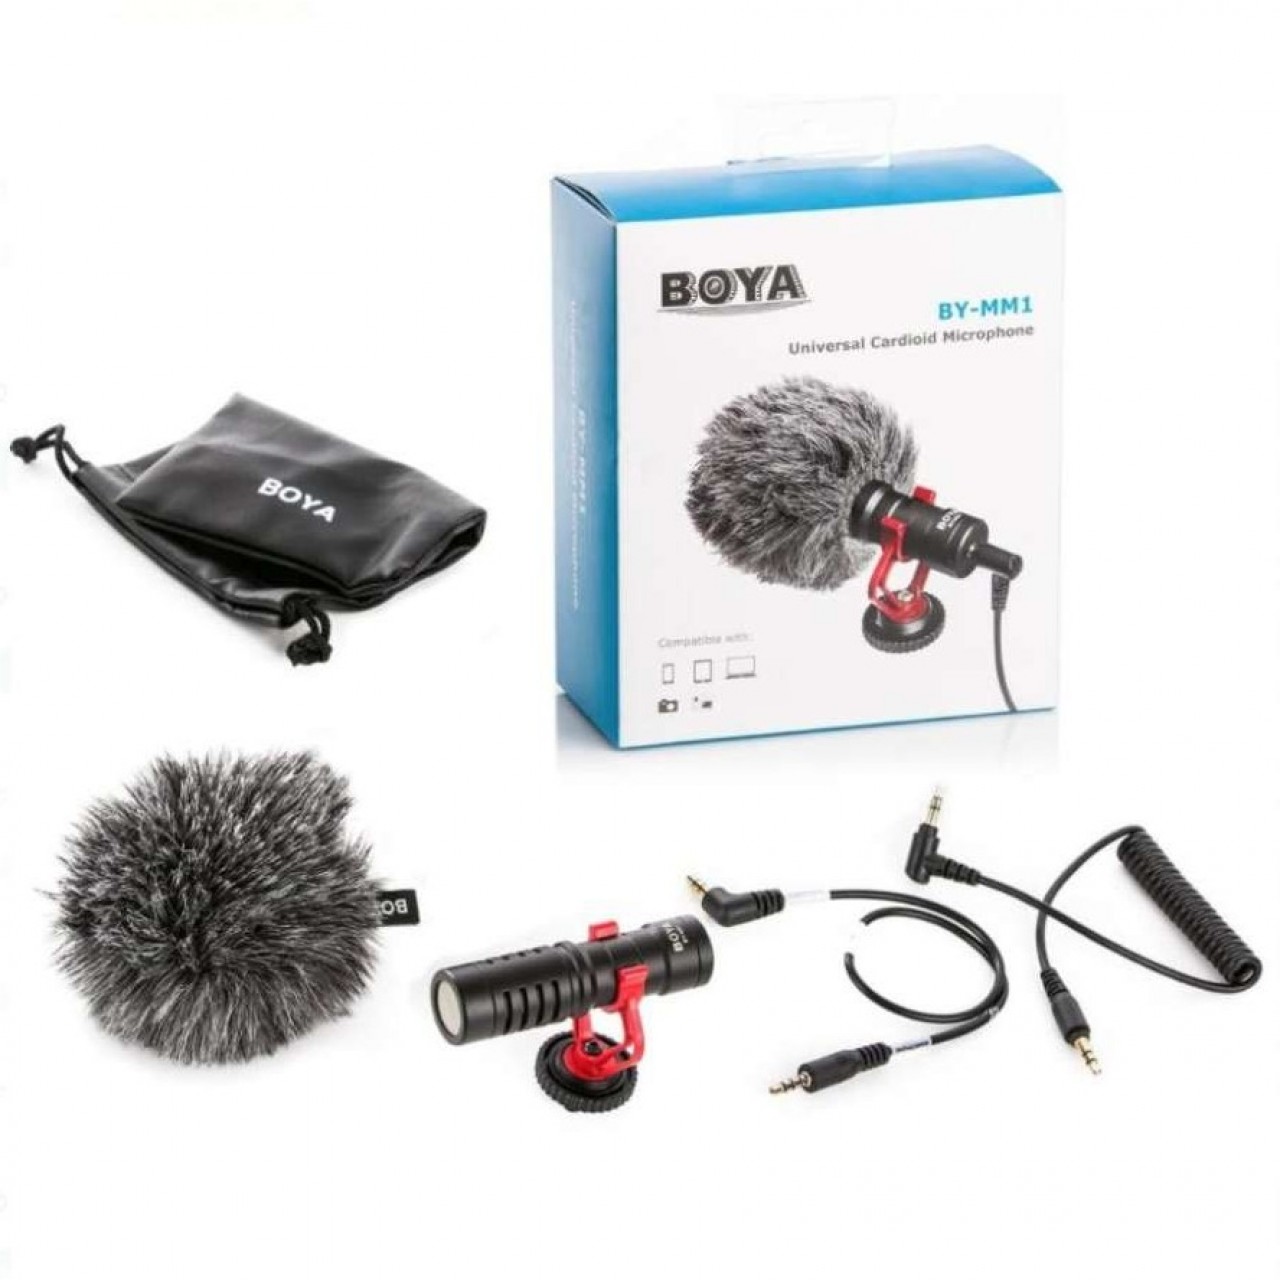 BOYA .Bym1 Professional Colar Microphone